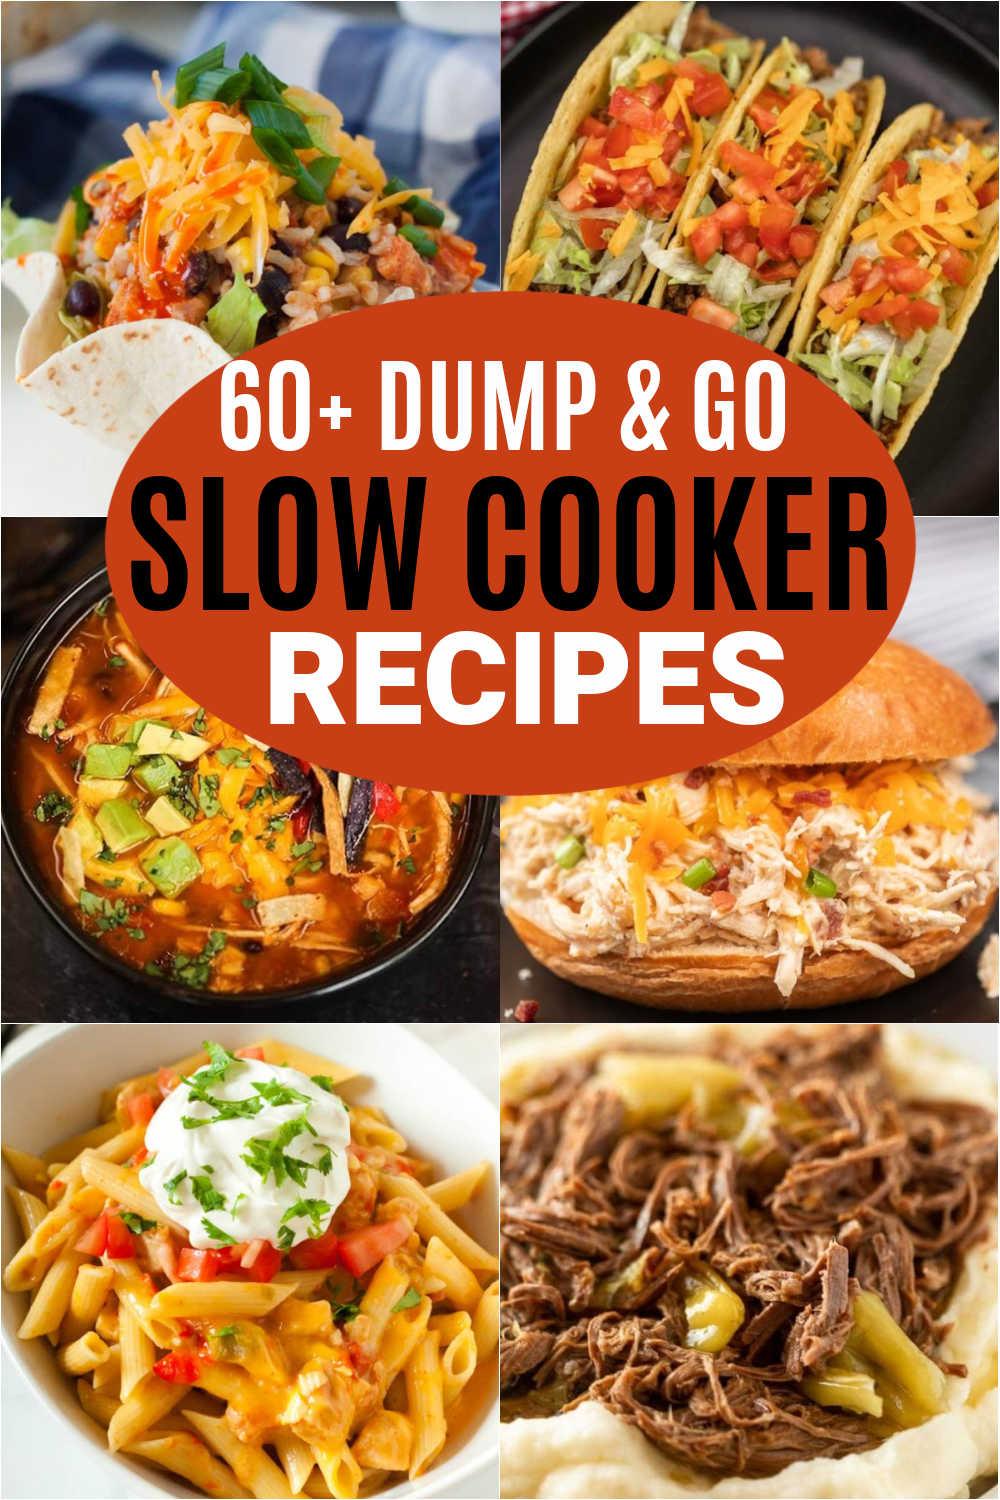 https://www.eatingonadime.com/wp-content/uploads/2021/11/Dump-Go-Slow-Cooker-Recipes-Pin-1.jpg